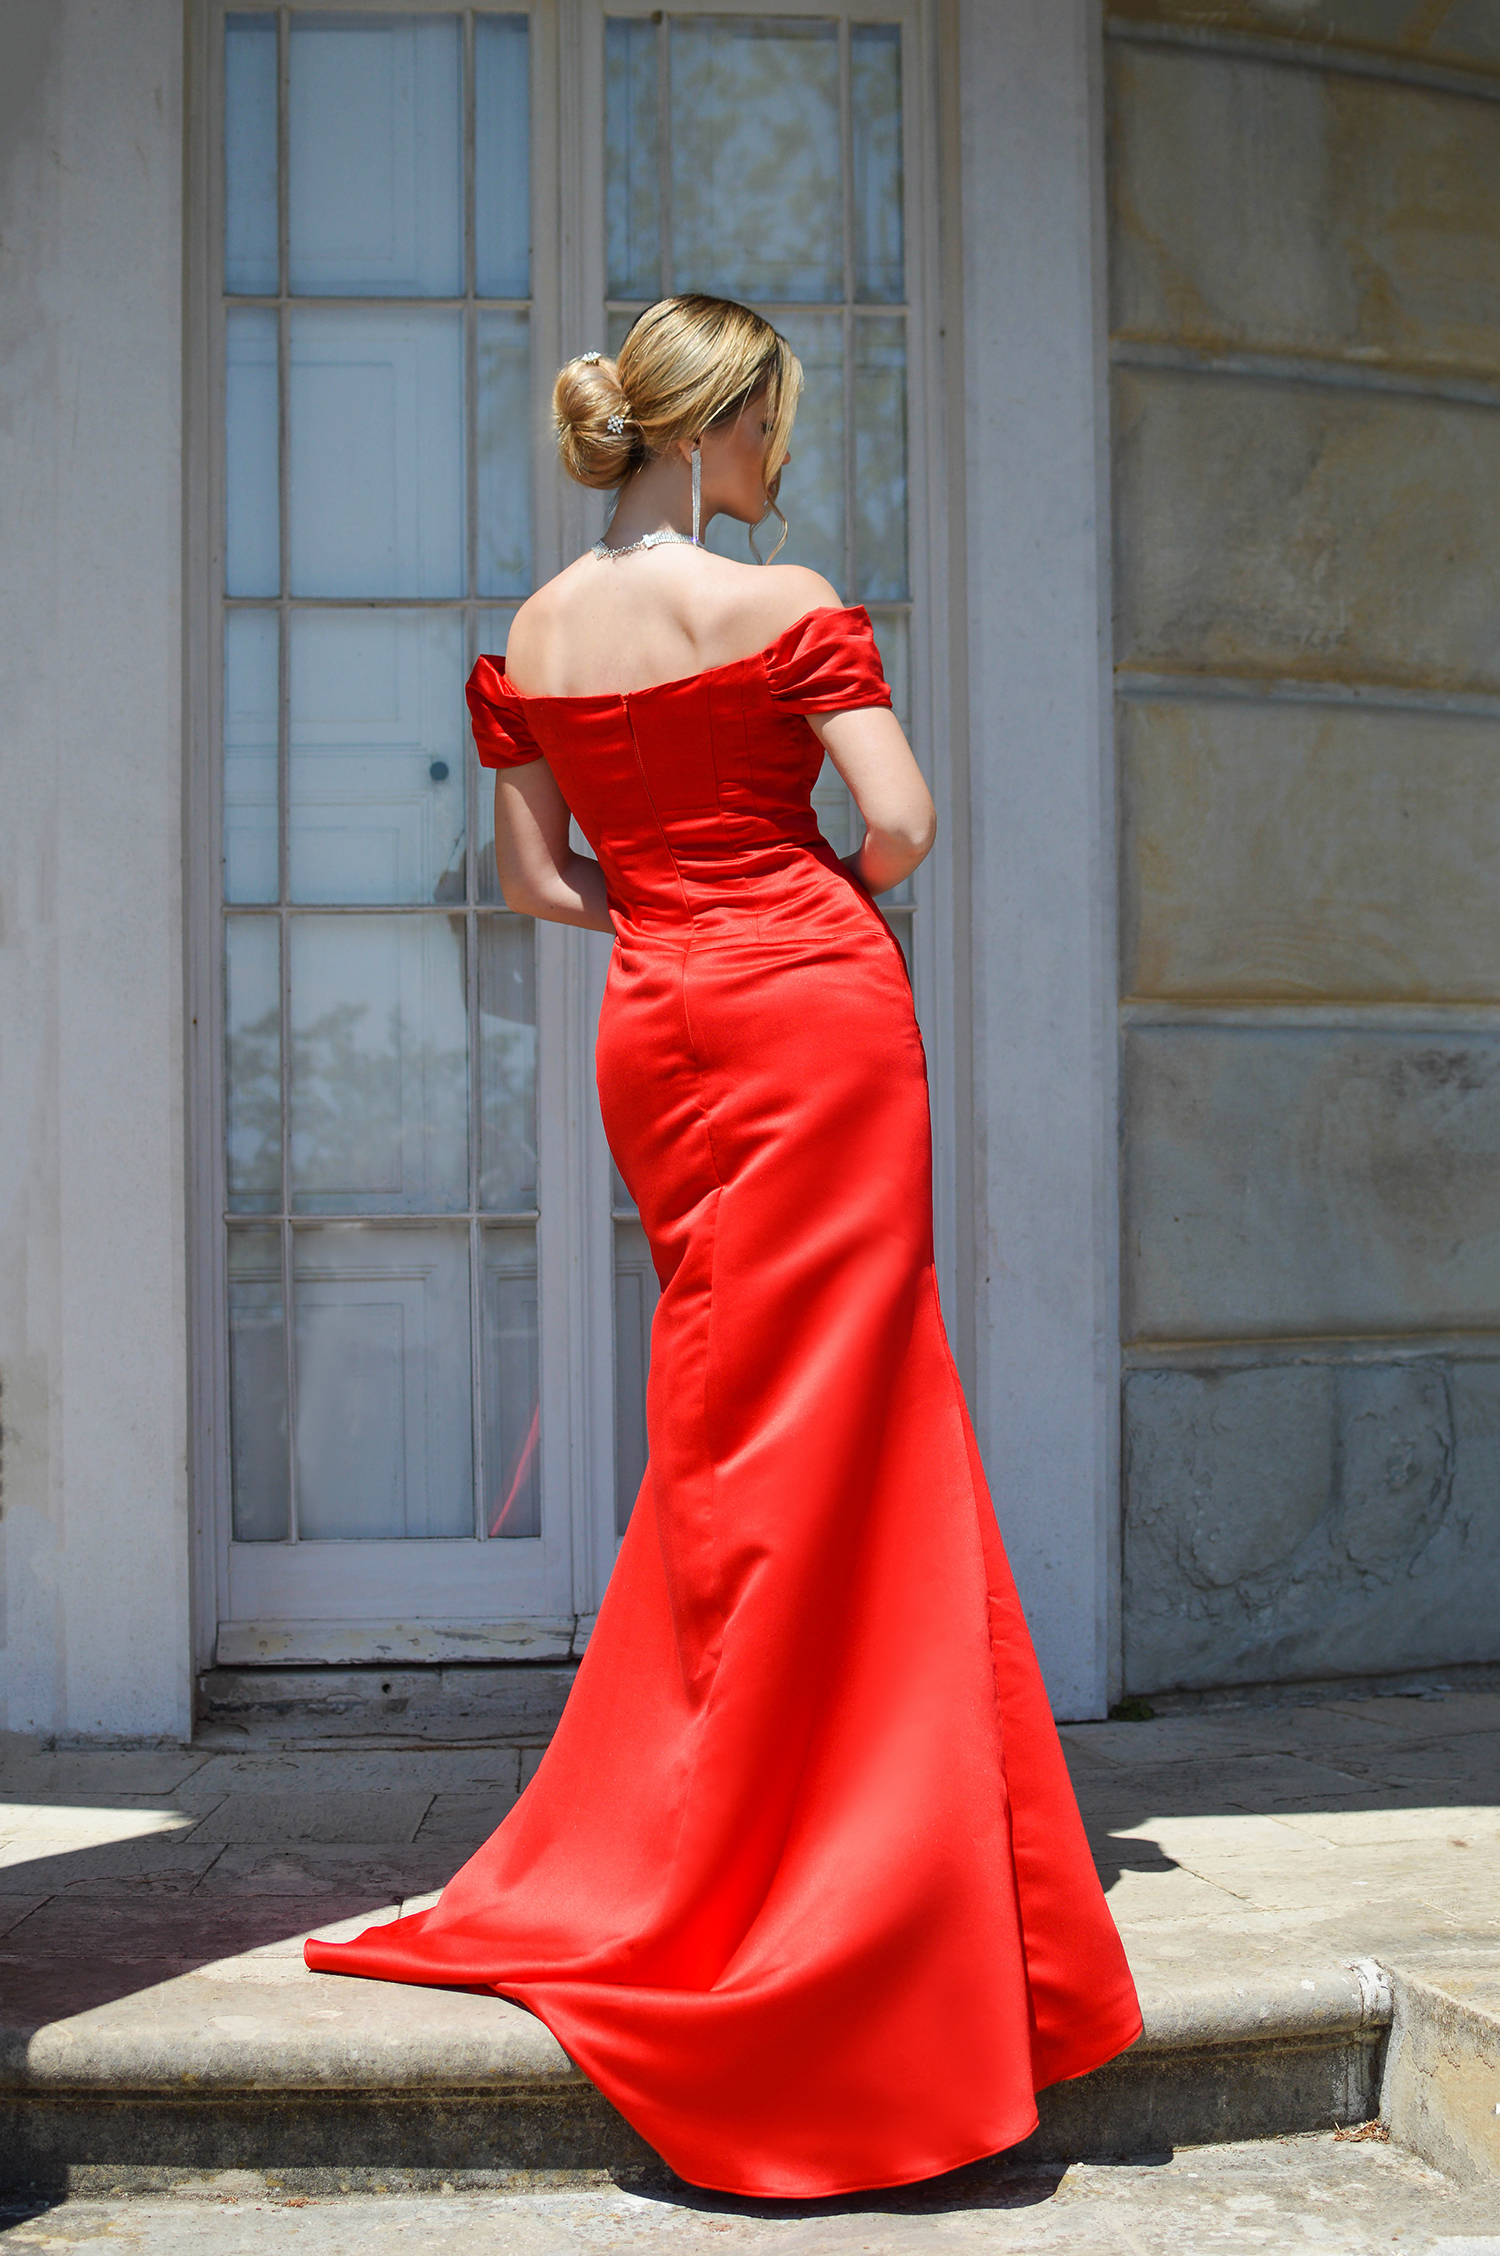 Lady in Red by Tamara Bellis